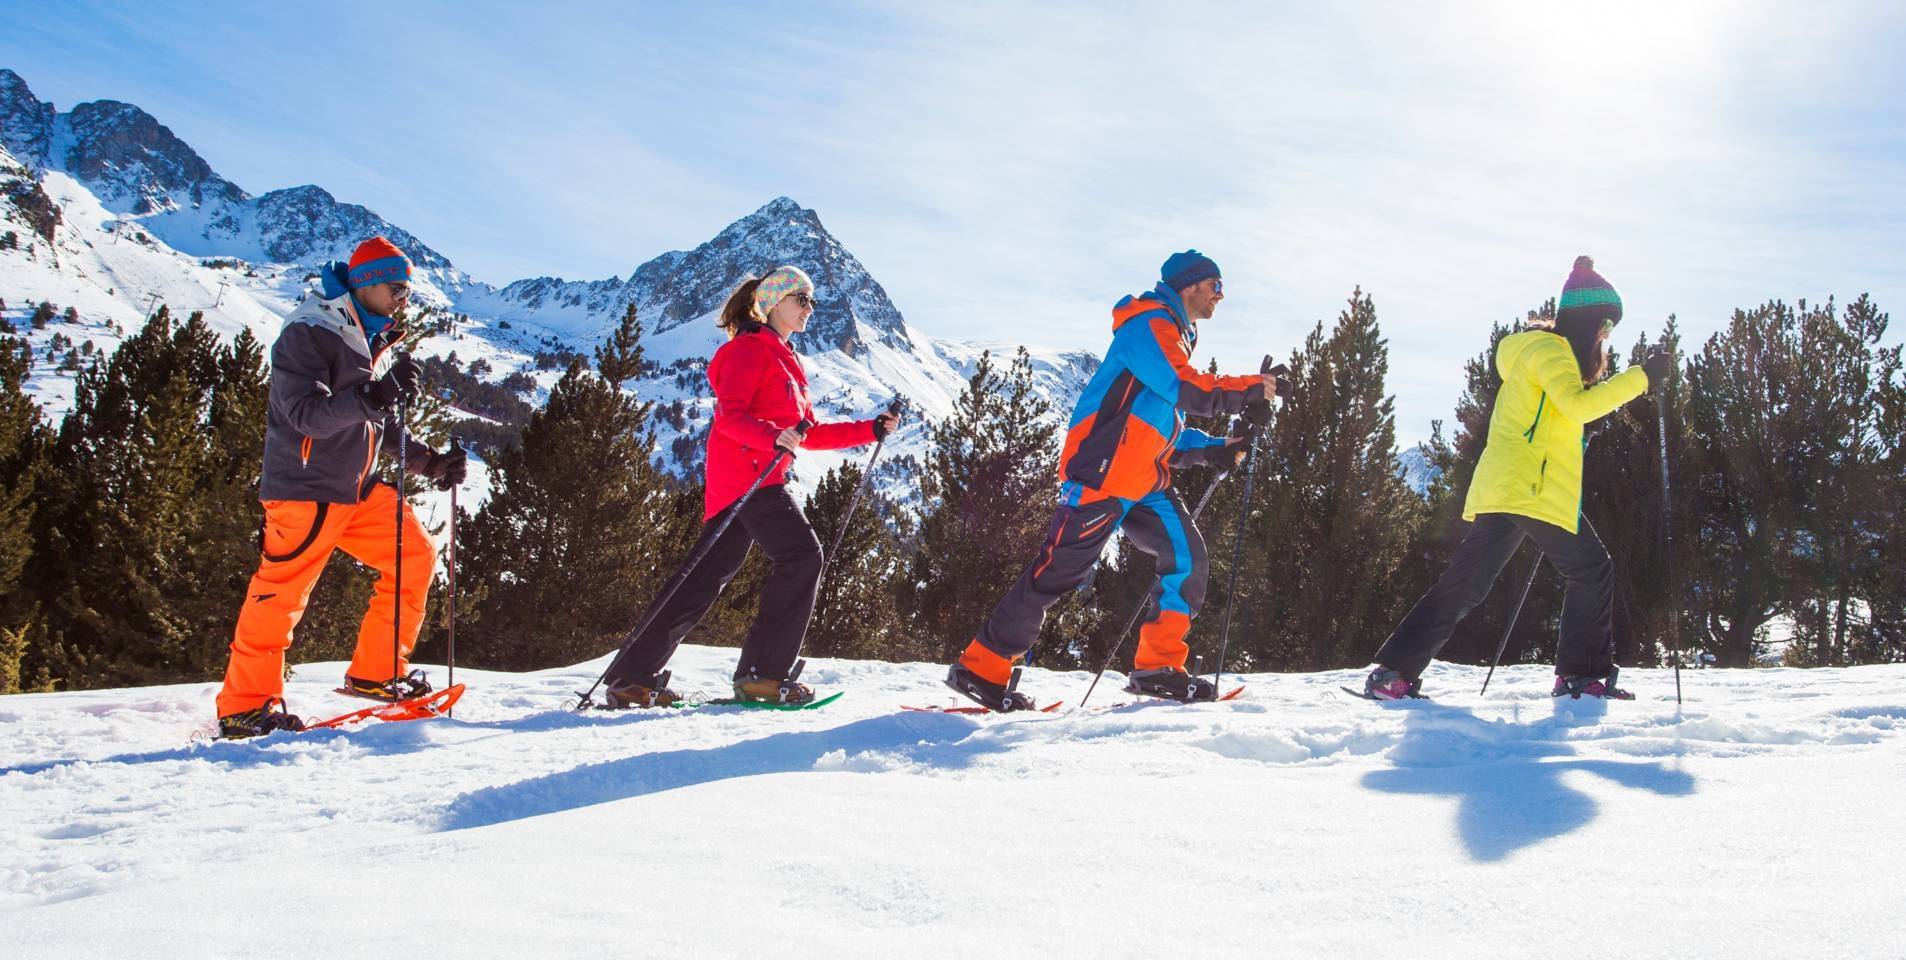 Excursió amb RAQUETES DE NEU a ANDORRA amb Esports Elit Canillo Andorra Si no saps o no vols esquiar, la manera més fàcil de gaudir de les muntanyes blanques d’Andorra és amb raquetes de neu. No necessites cap nivell tècnic i no presenta cap dificultat física. Es tracta d’un passeig insòlit sobre la neu de muntanya amb raquetes als peus. Quan ho hagis provat, repetiràs. Llogar raquetes de neu a Andorra i anar pel teu compte. No et preocupis, t’explicarem exactament quina ruta pots fer. I com funcionen les raquetes de neu. Contractar un guia que et porti i t’ensenyi els llocs meravellosos d’Andorra. https://esportselit.com/  esportselit@andorra.ad Rutes amb raquetes de neu al Principat d’Andorra amb Esports Elit Les rutes guiades amb raquetes de neu a Andorra són activitats esportives